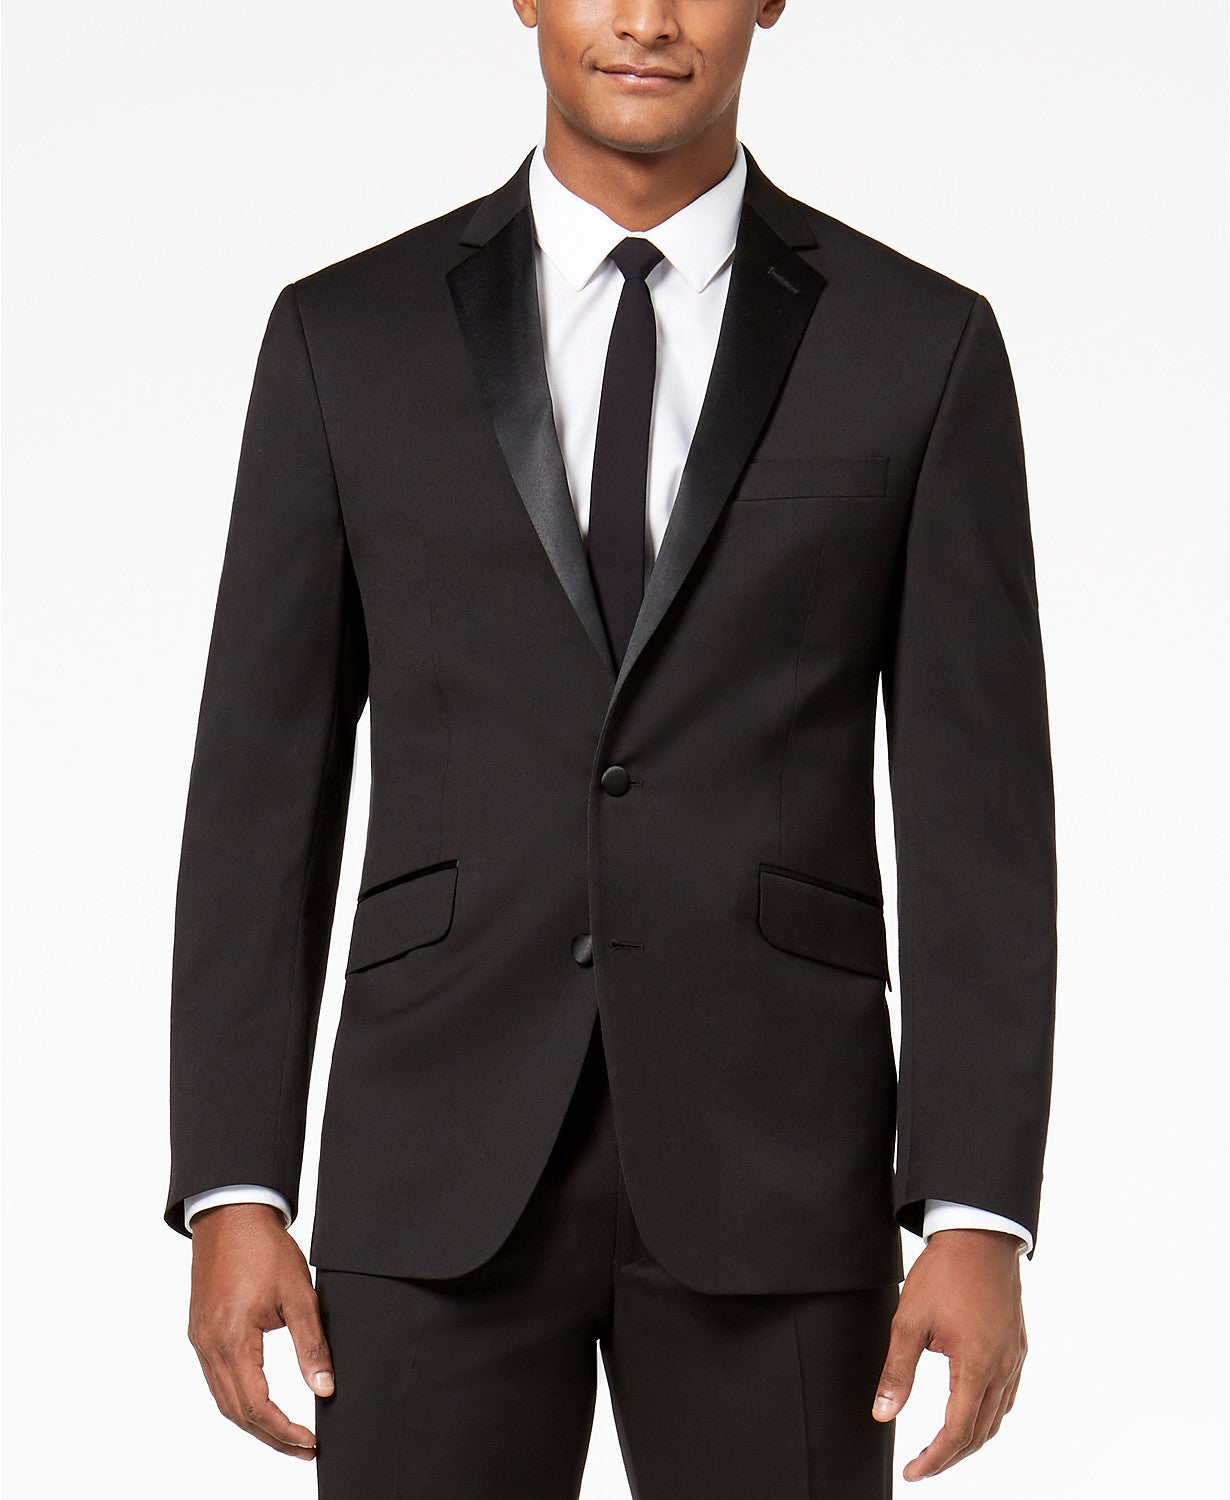 Kenneth Cole Mens Tuxedo Suit 40L 33 x 32 Flex Slim-Fit Black Notch Lapel